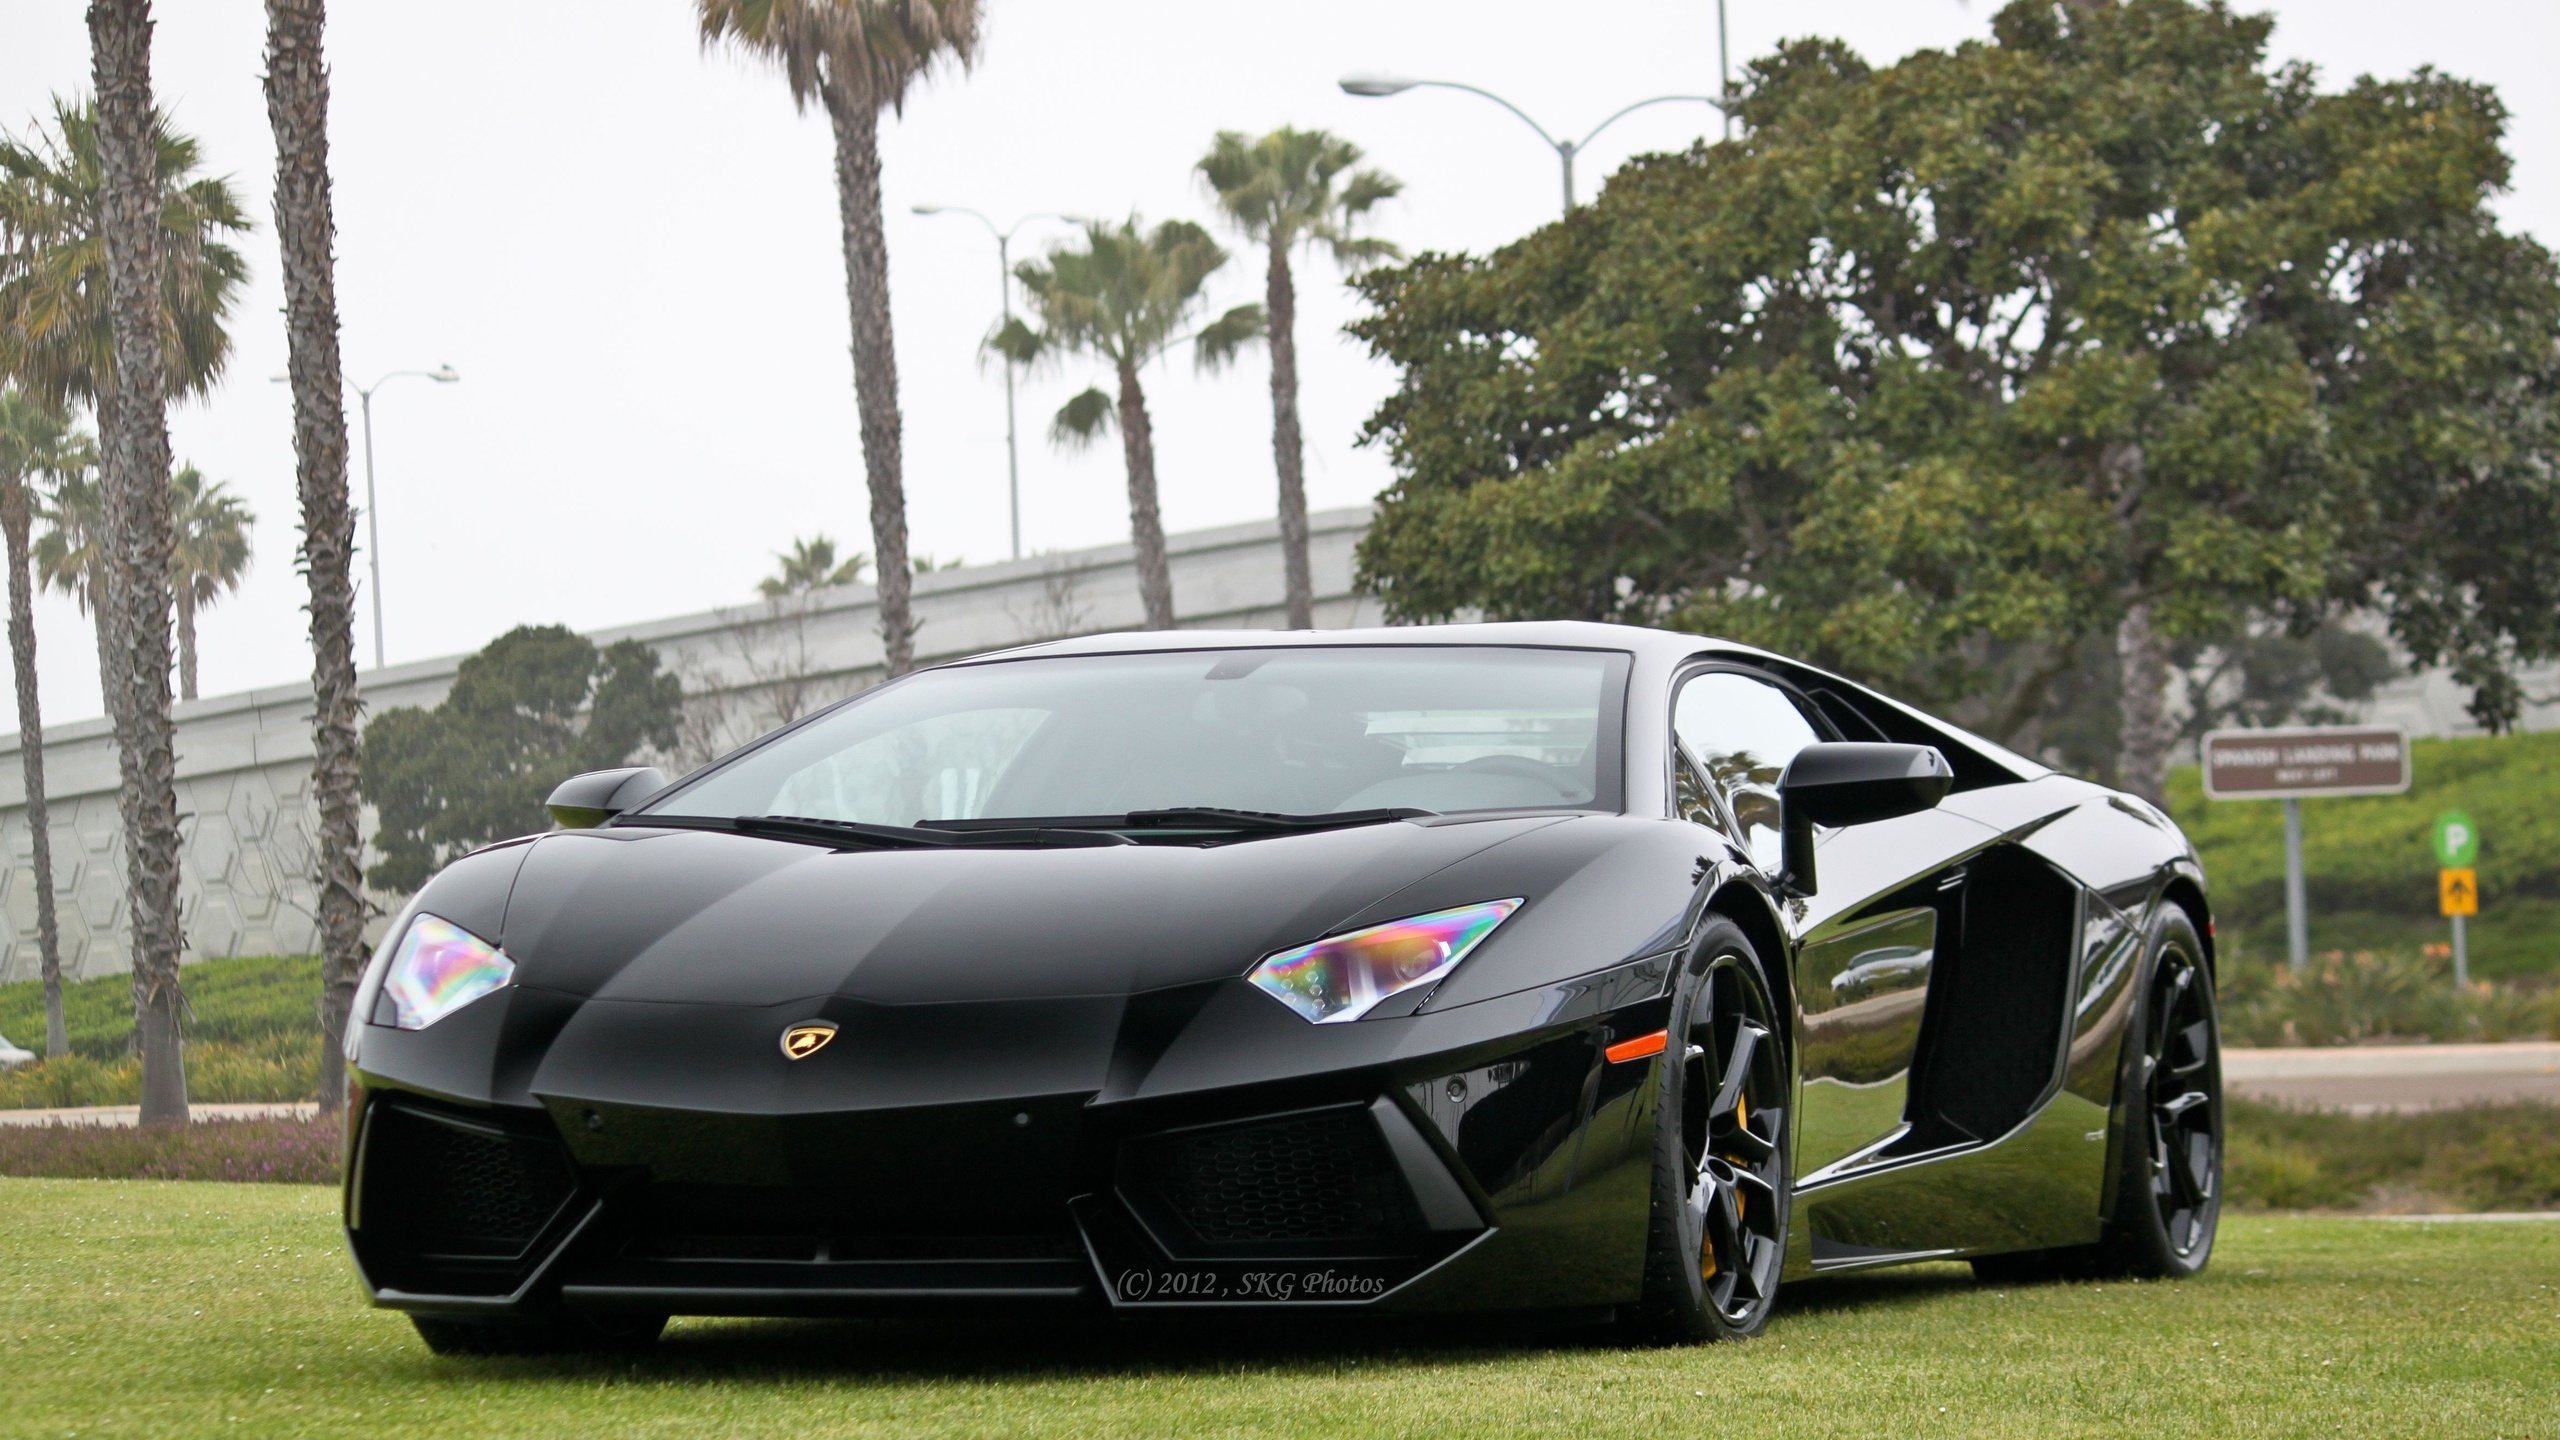 General 2560x1440 Lamborghini Aventador car vehicle black cars Lamborghini 2012 (Year)